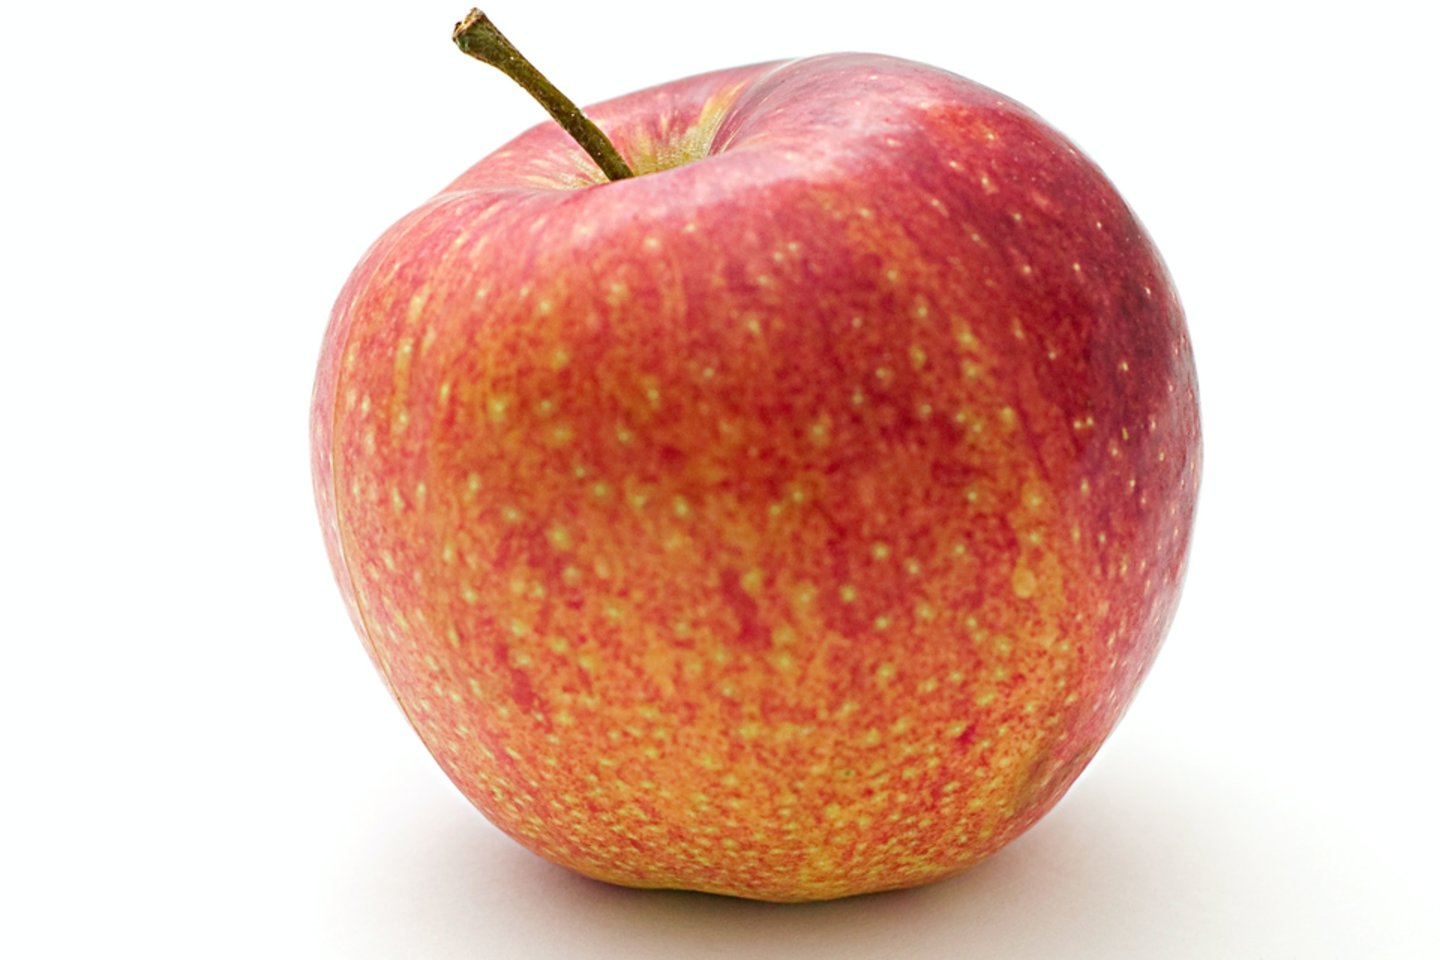  15 nėštumo savaitę vaikučio dydis lyg obuolio.<br>  Pexels.com nuotr.